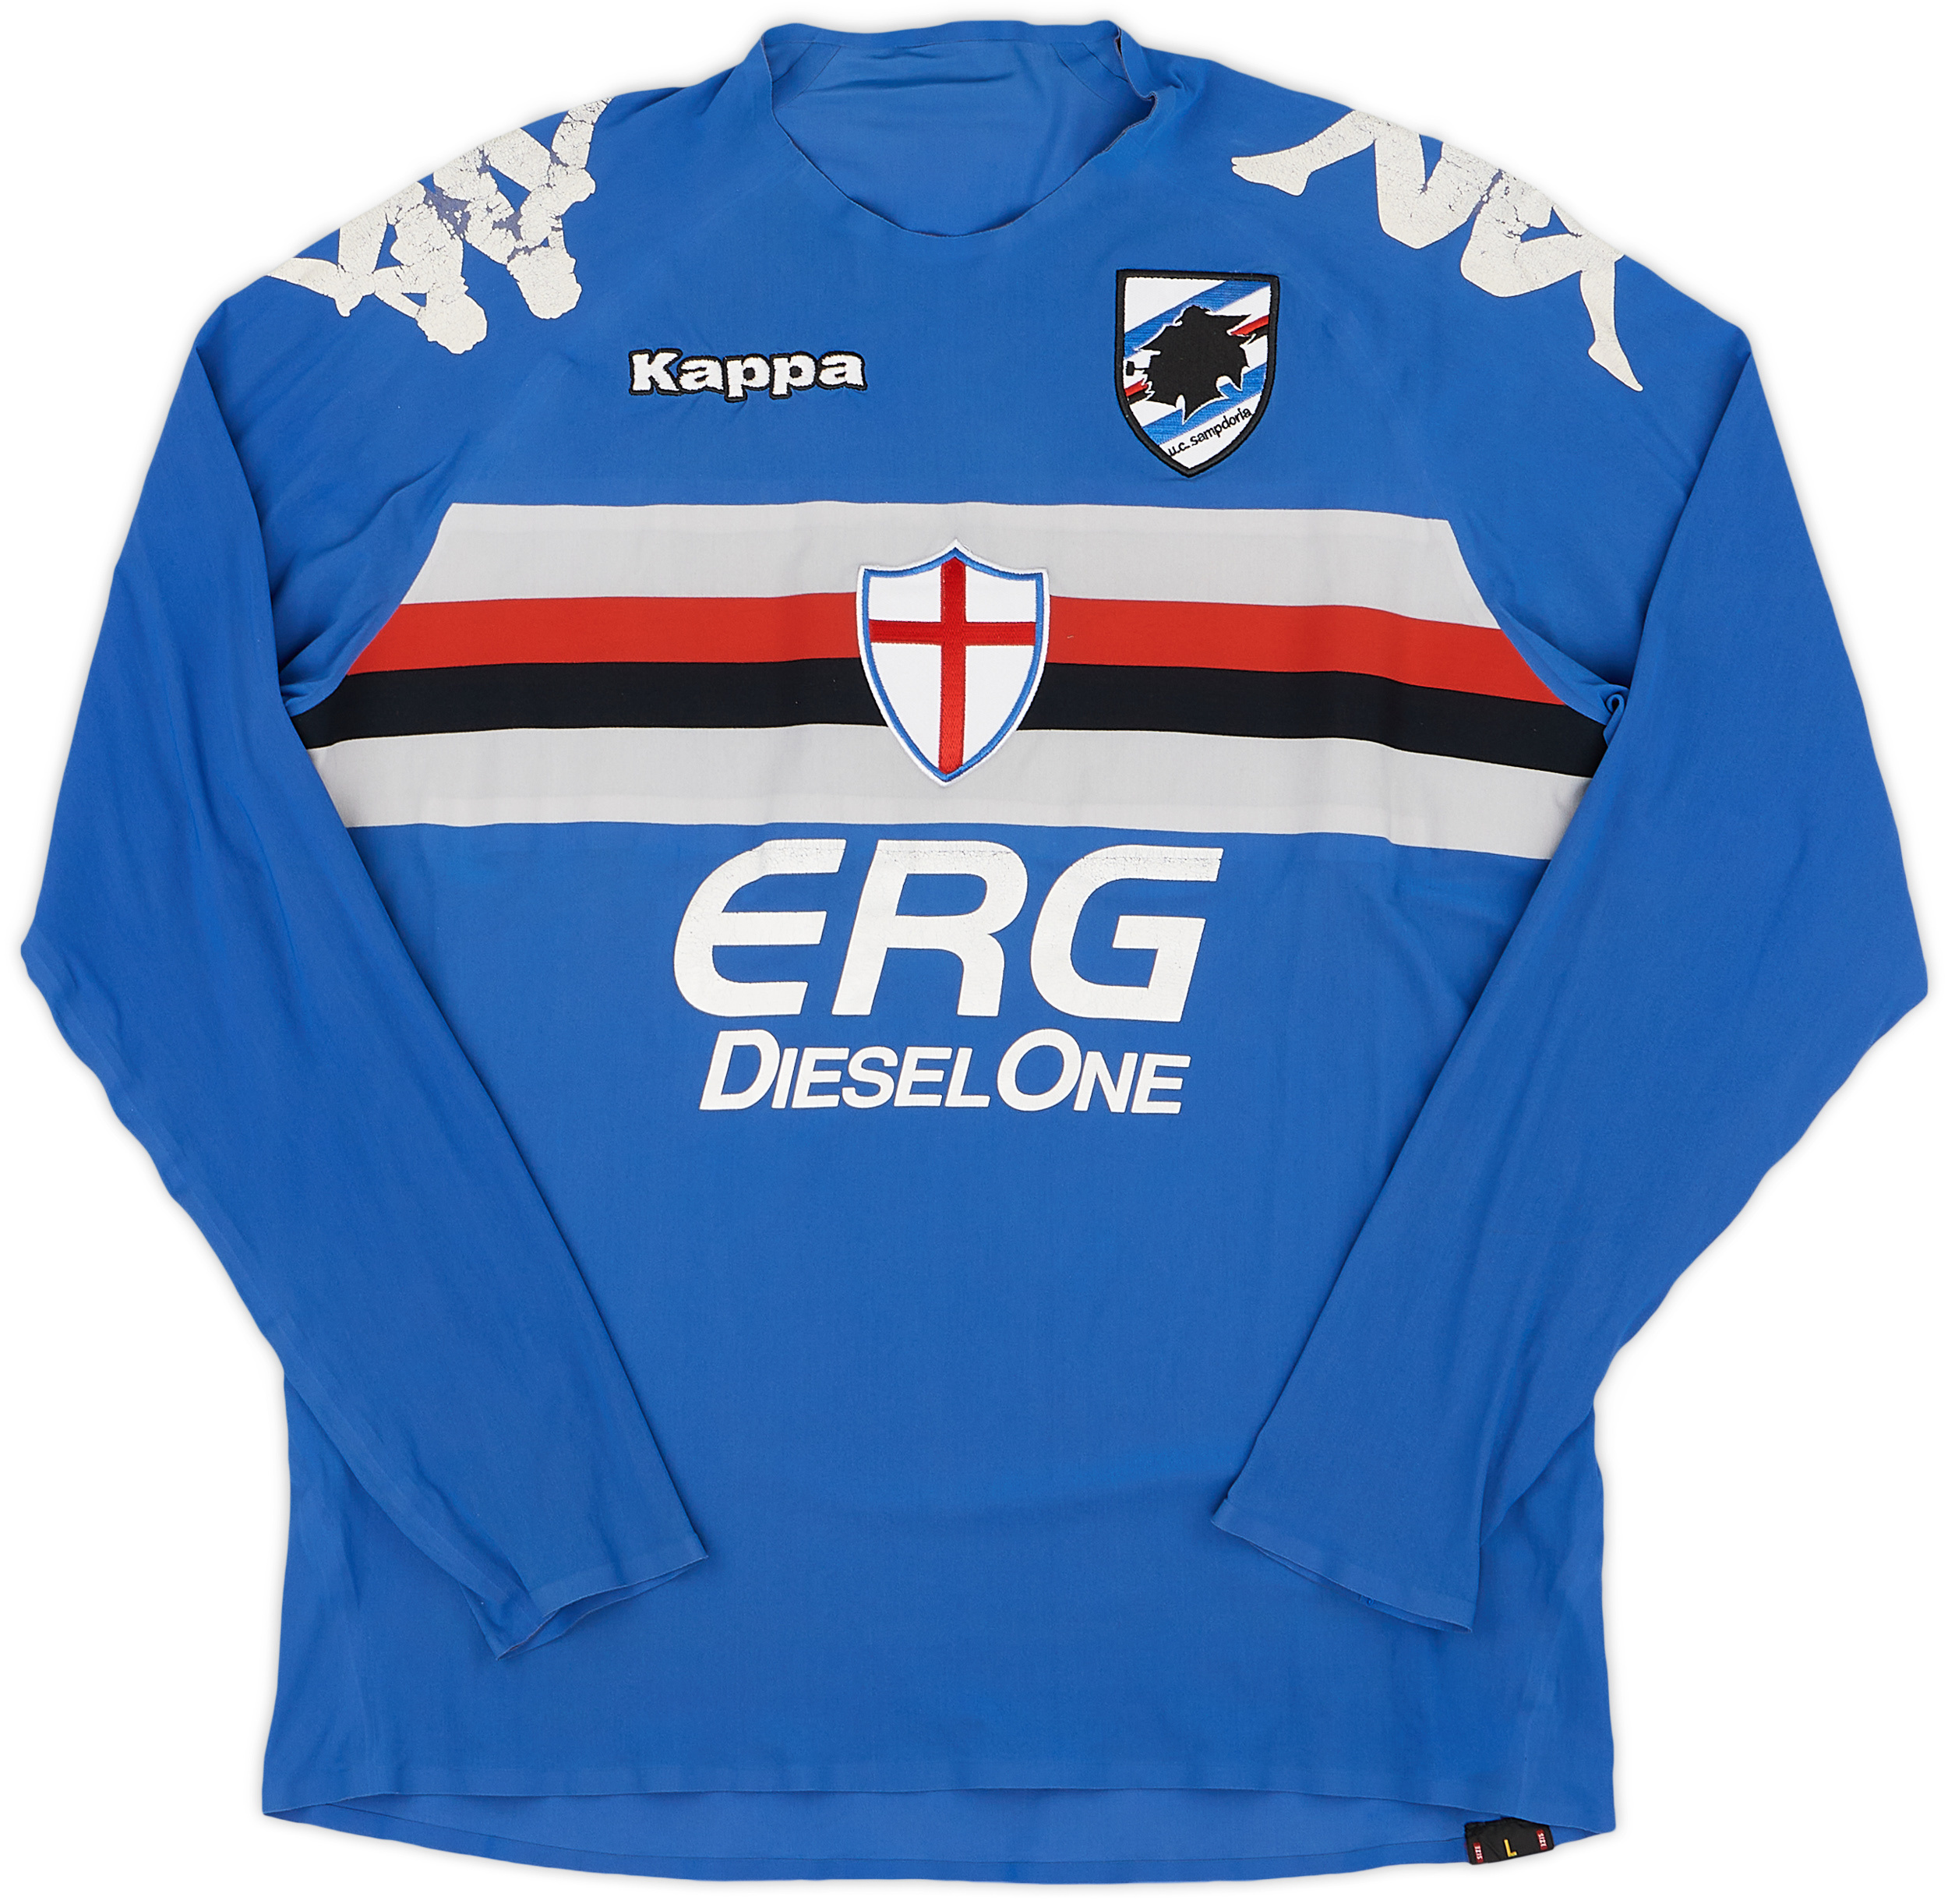 2005-06 Sampdoria Player Issue European Home Shirt - 5/10 - ()